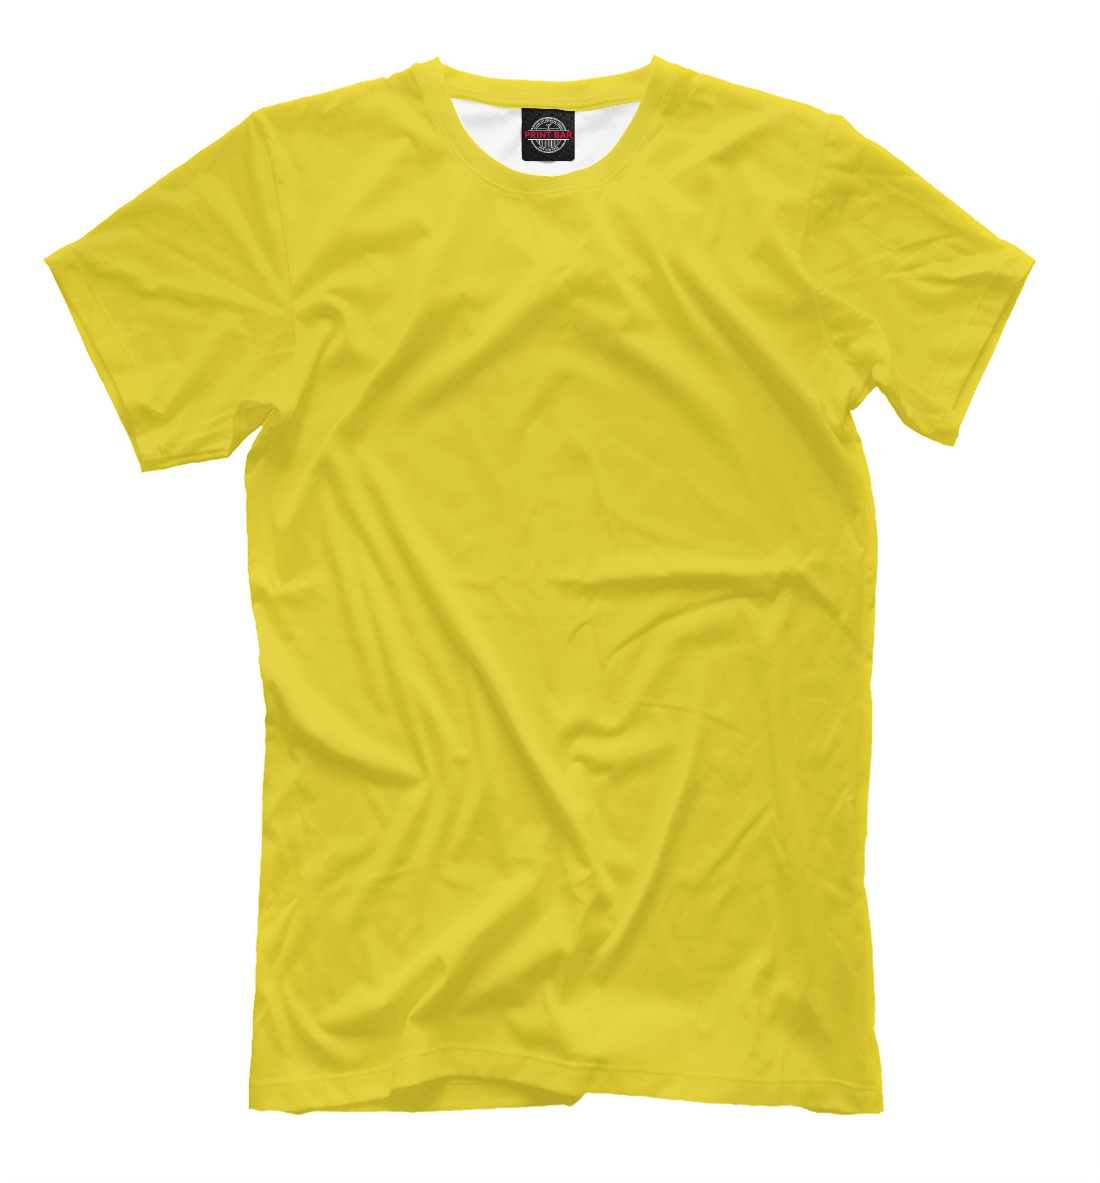 Детская Футболка Цвет Рапсово-желтый для мальчиков, артикул CLR-692519-fut-2mp